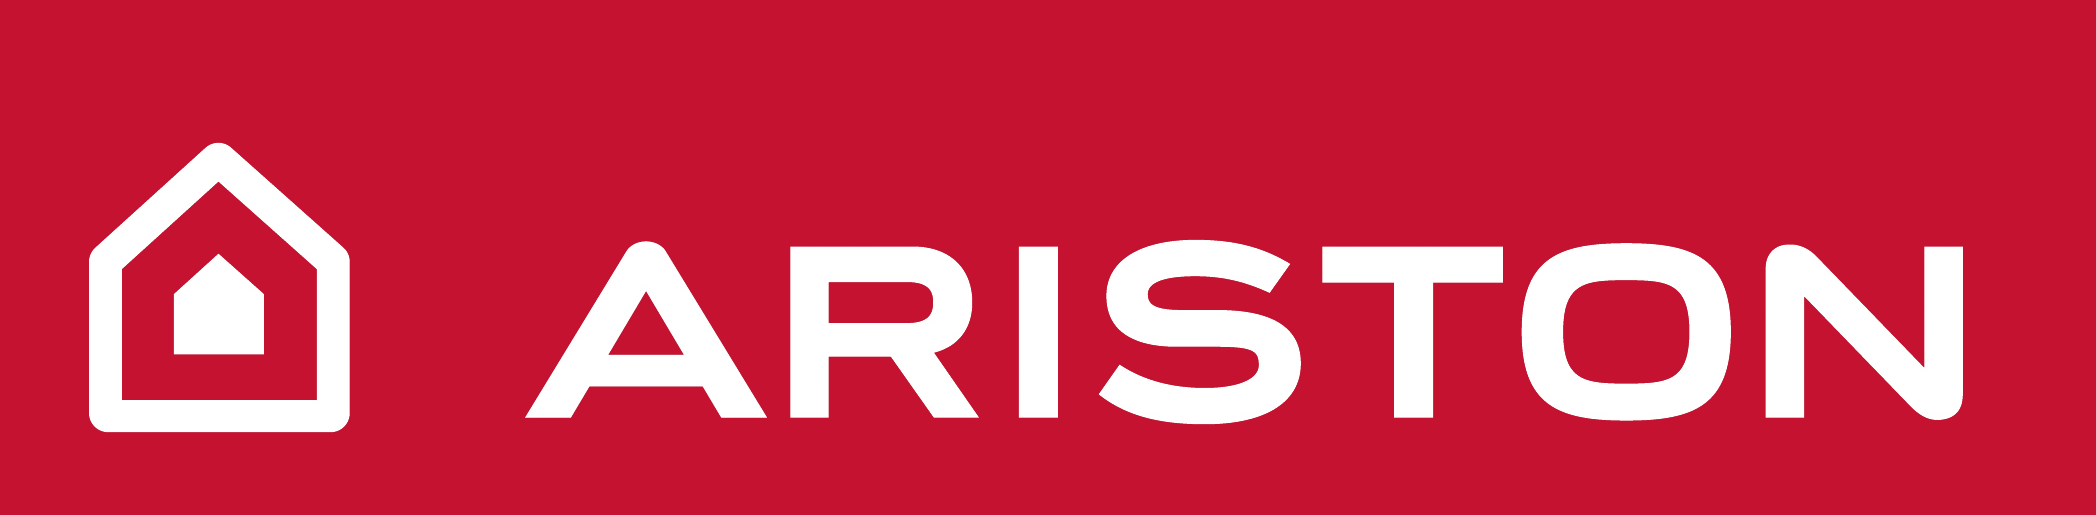 Ariston-logo